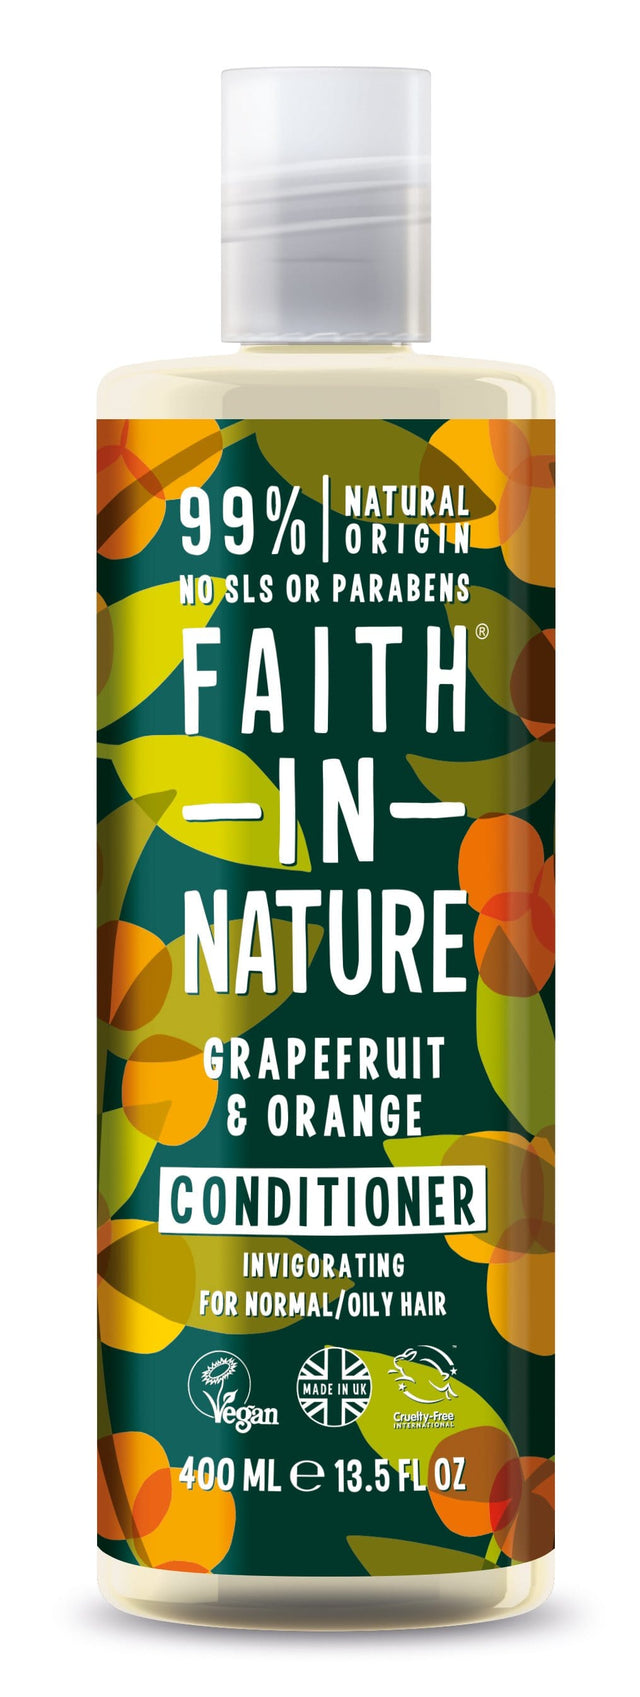 Faith in Nature Grapefruit & Orange Conditioner, 400ml